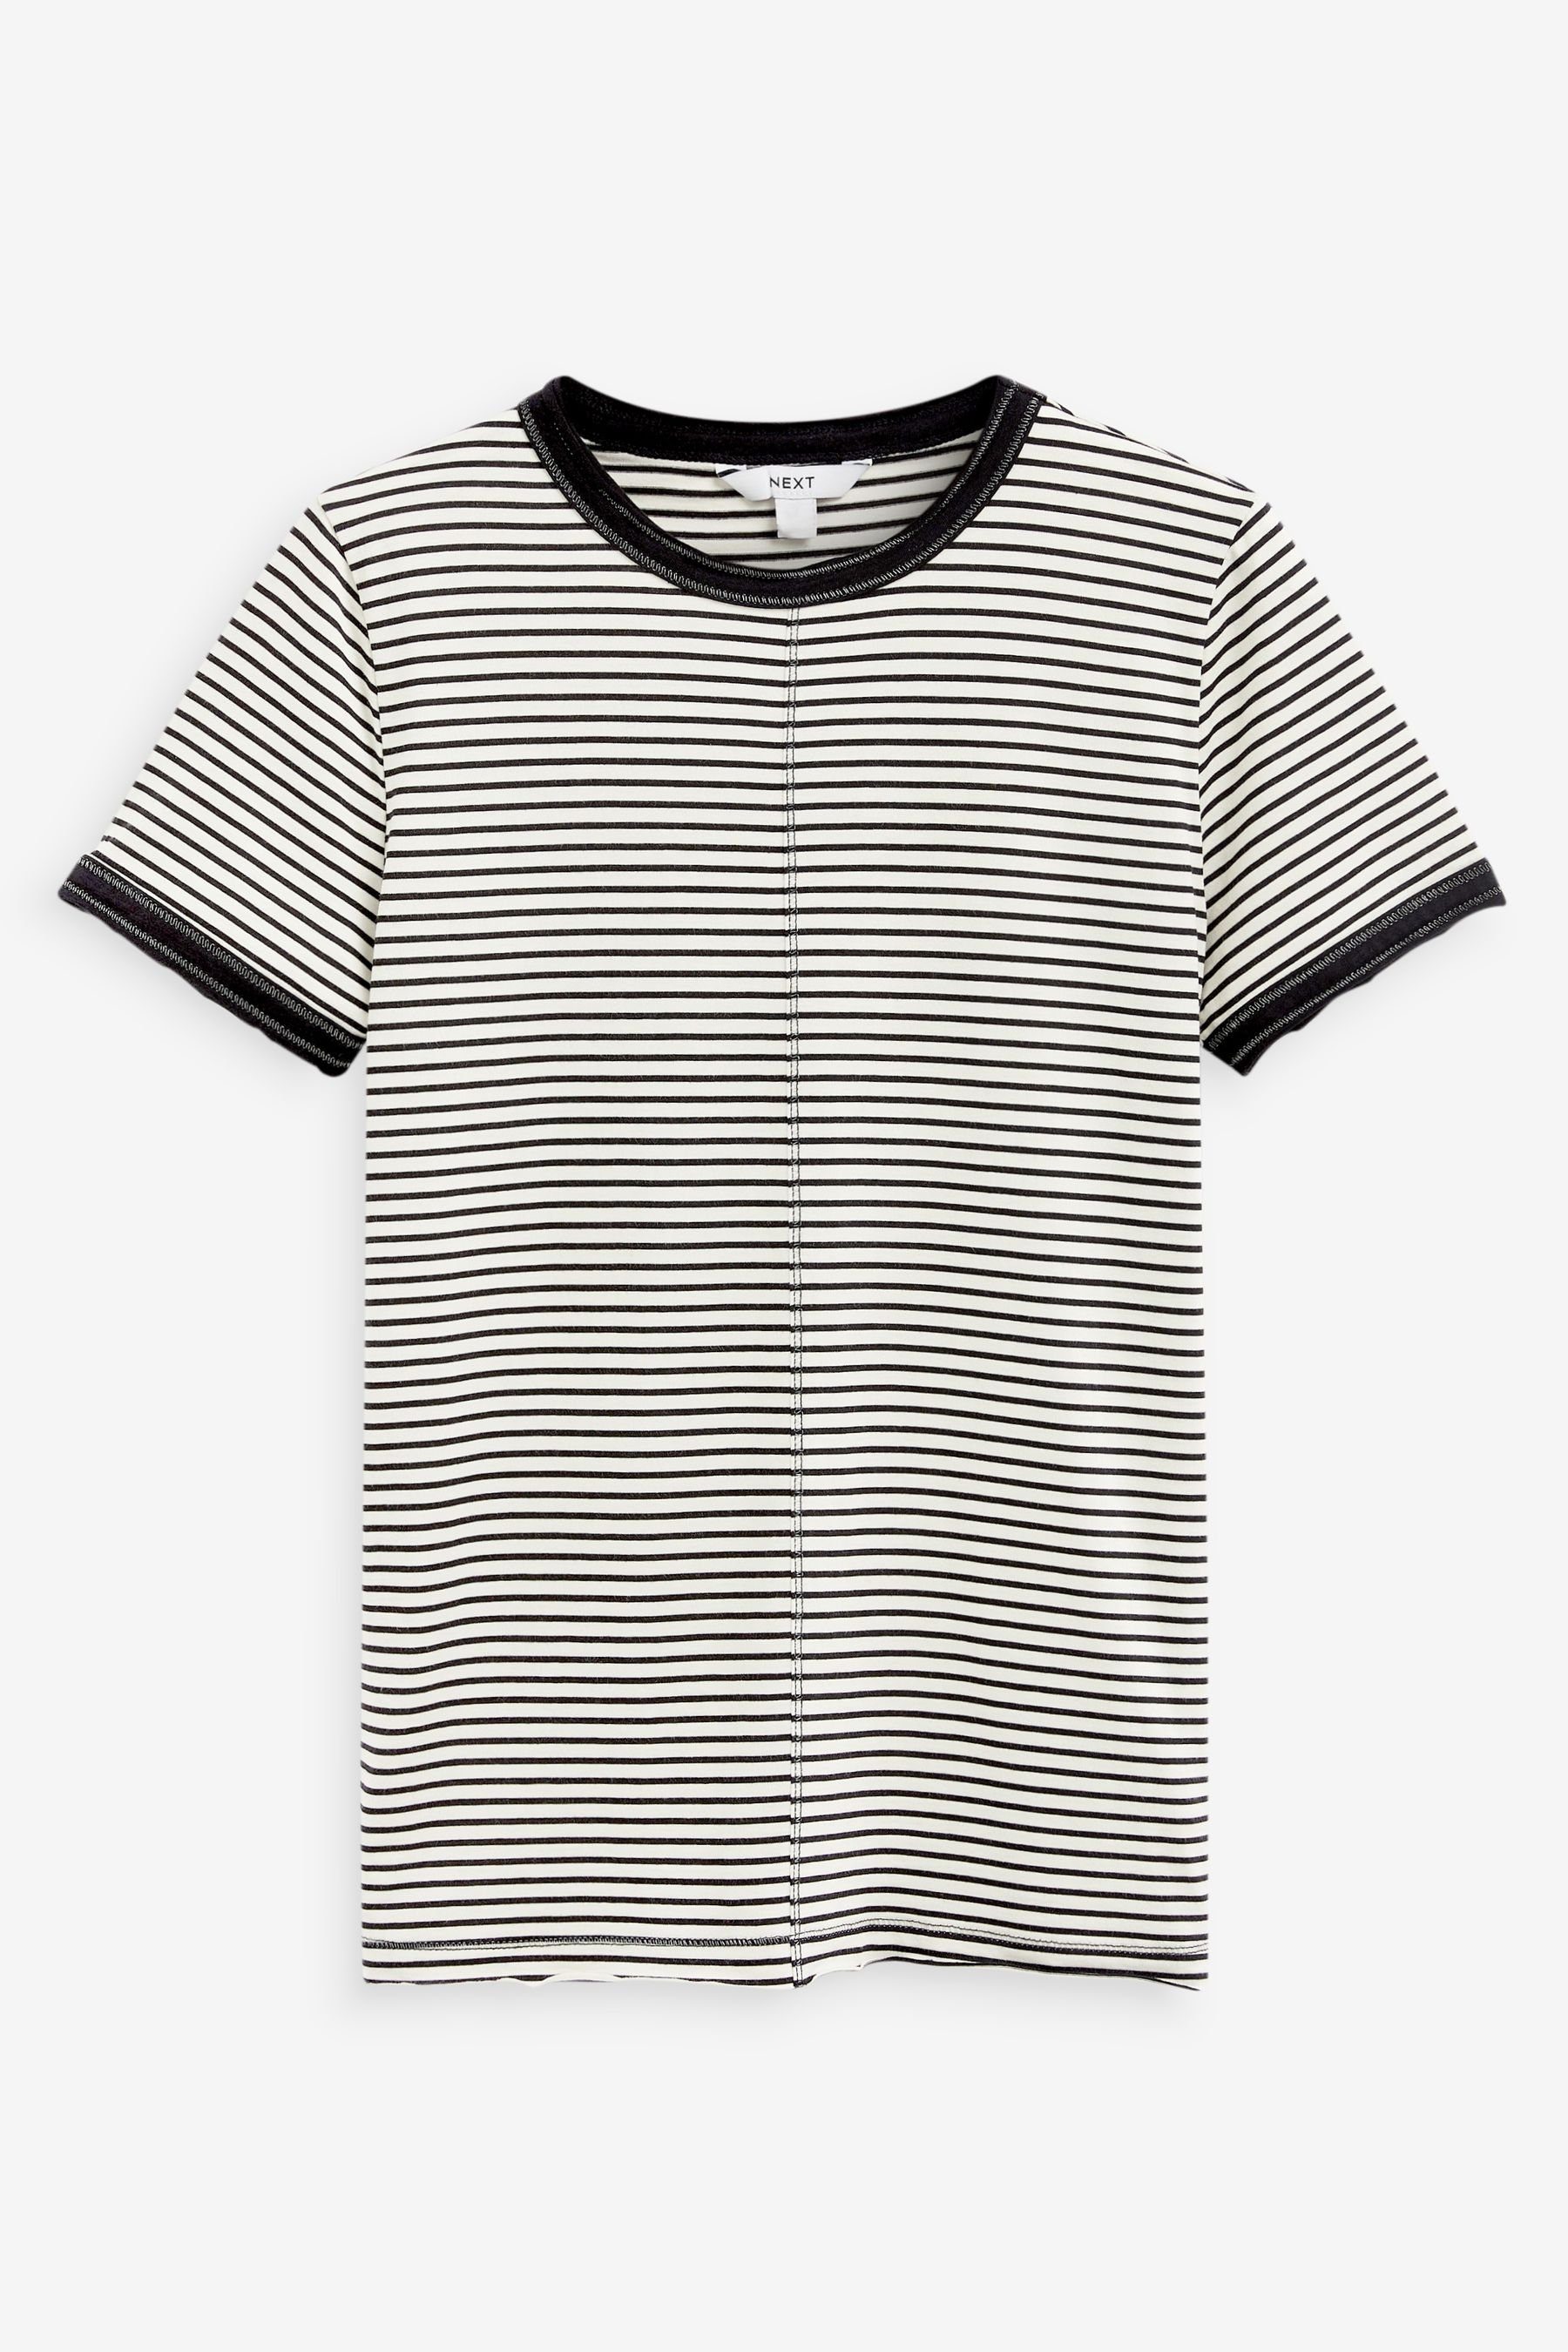 Next T-Shirt T-Shirt mit Rundhalsausschnitt, unversäumtem Saum (1-tlg) Black/White Stripe